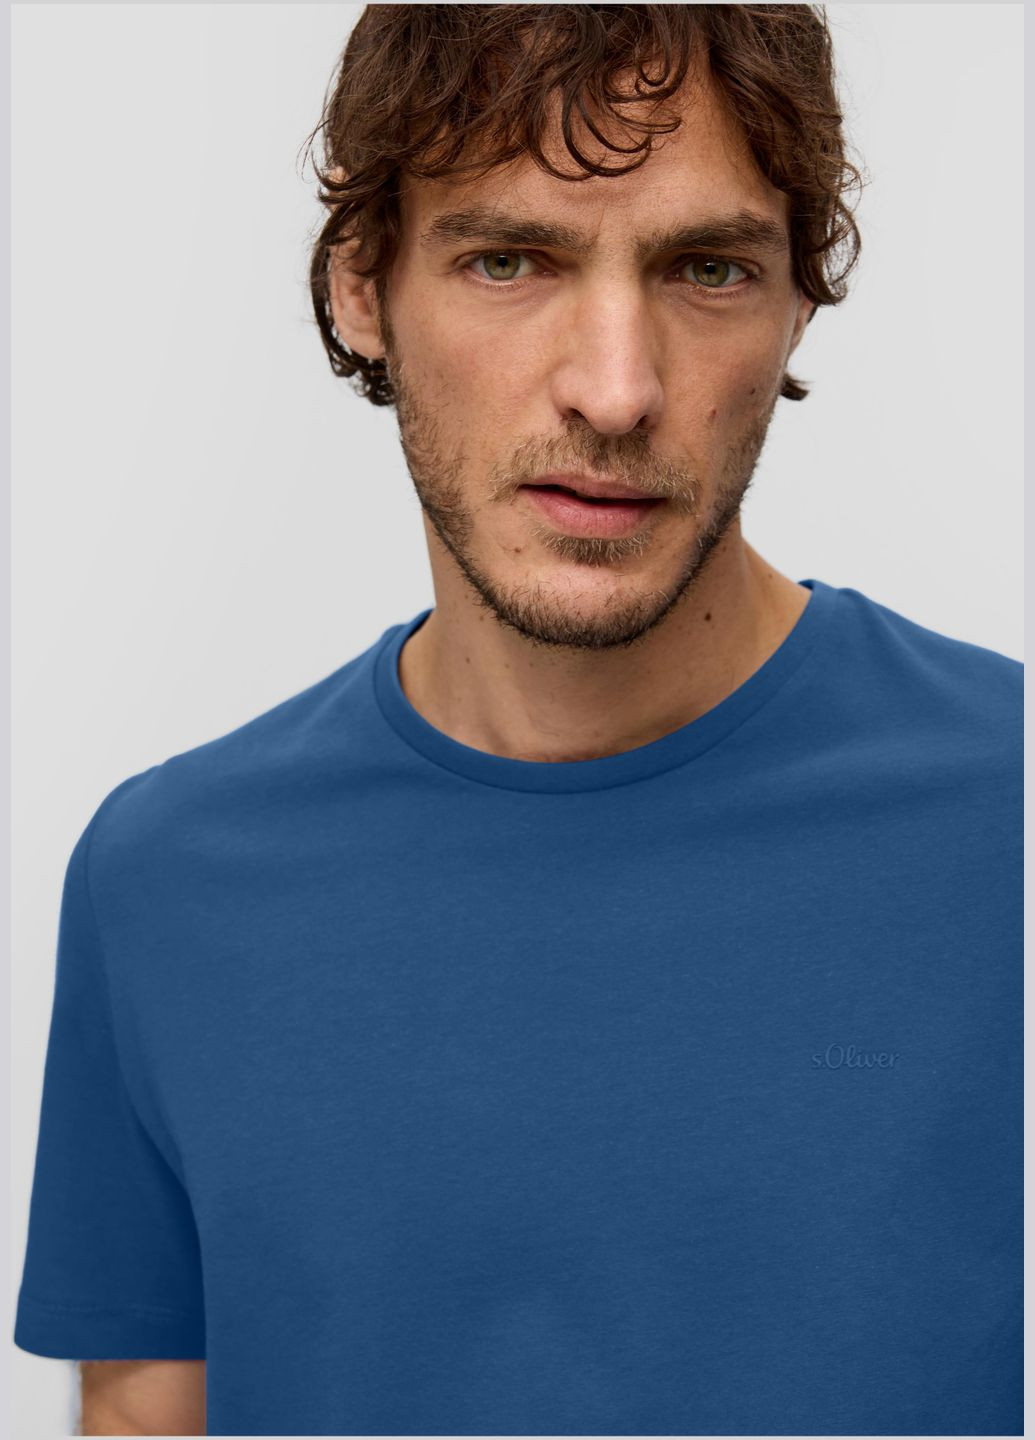 Синяя футболка S.Oliver